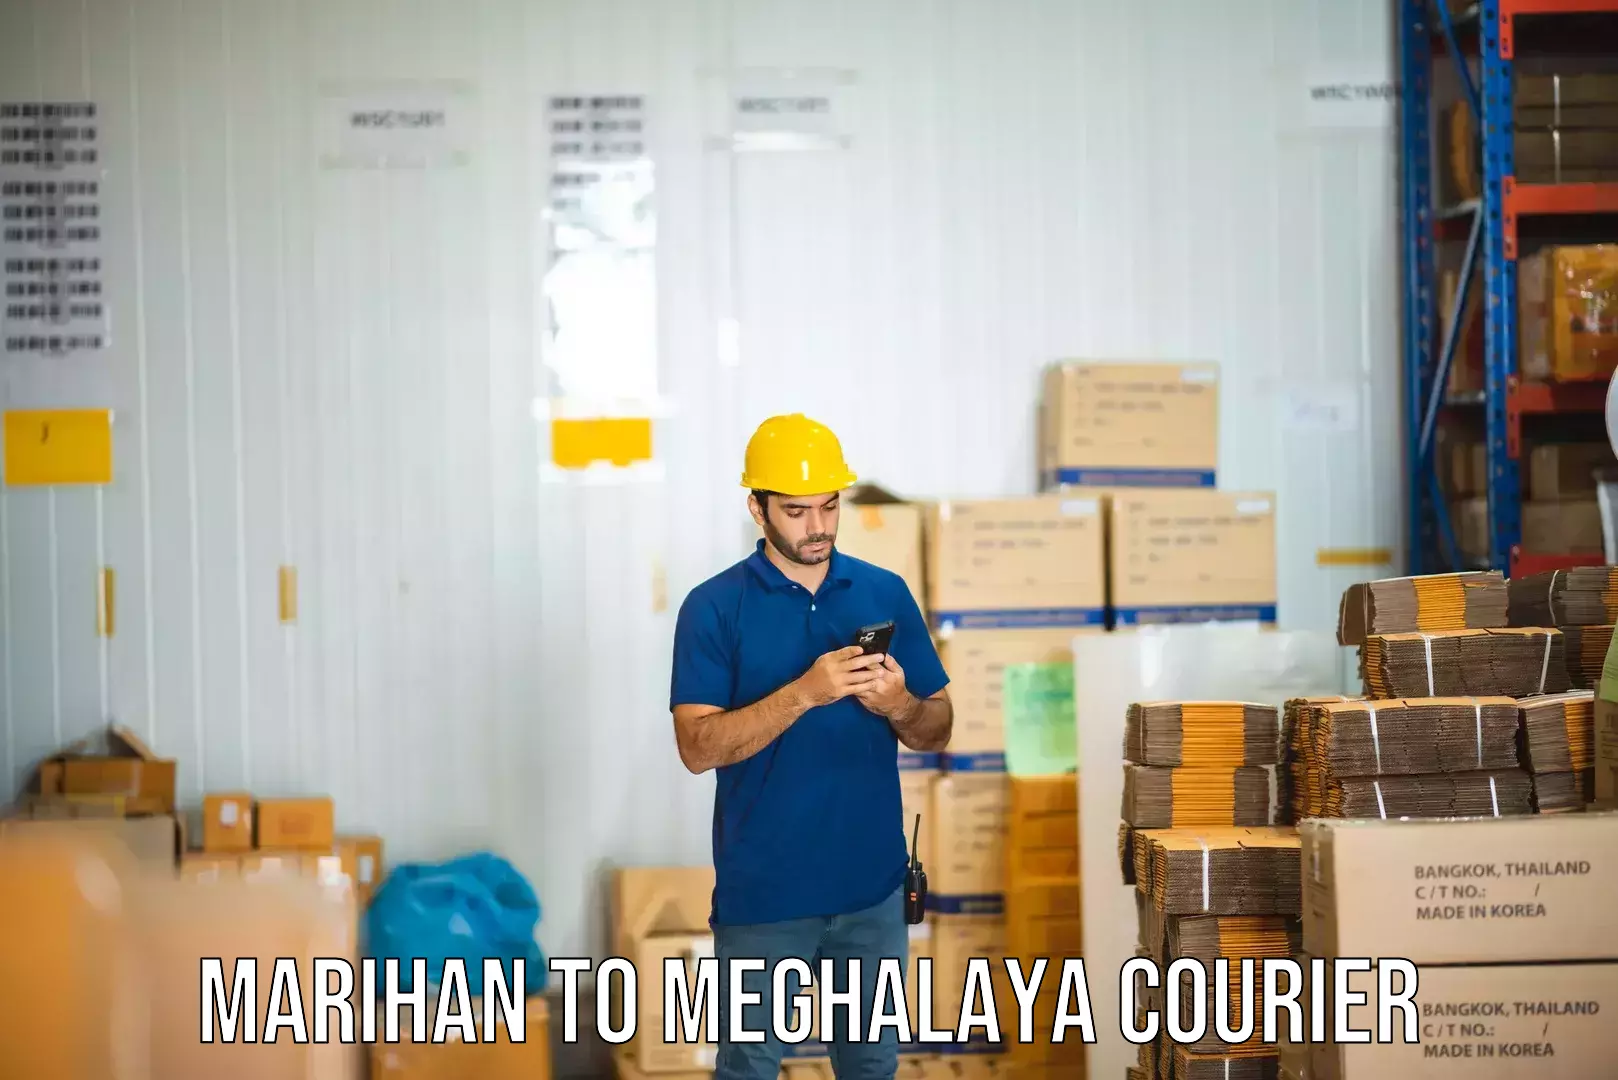 Express logistics service Marihan to Meghalaya